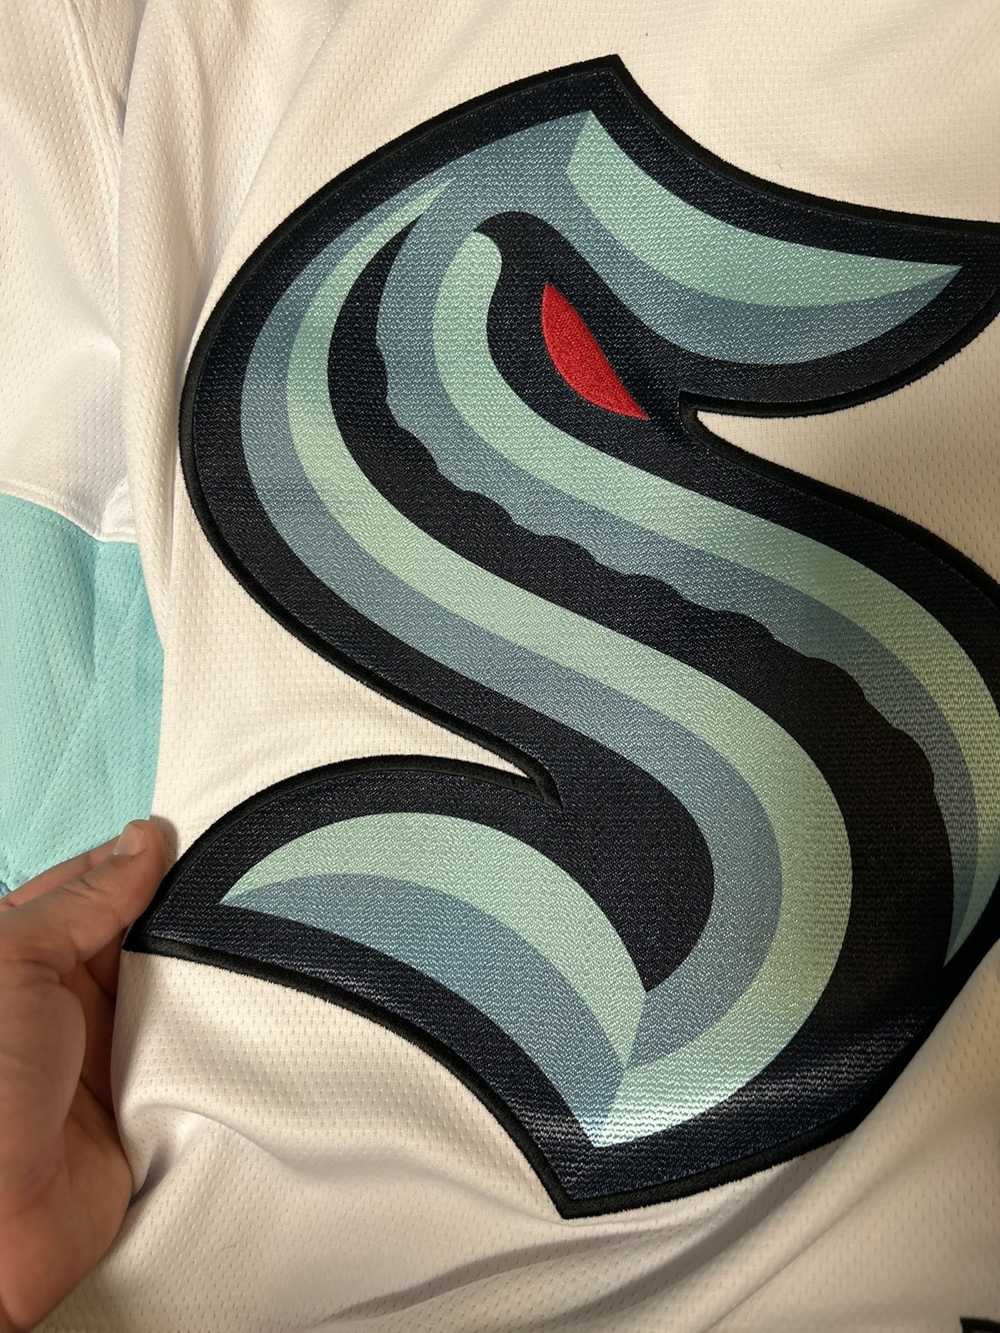 NHL × Streetwear Seattle kraken jersey - image 3